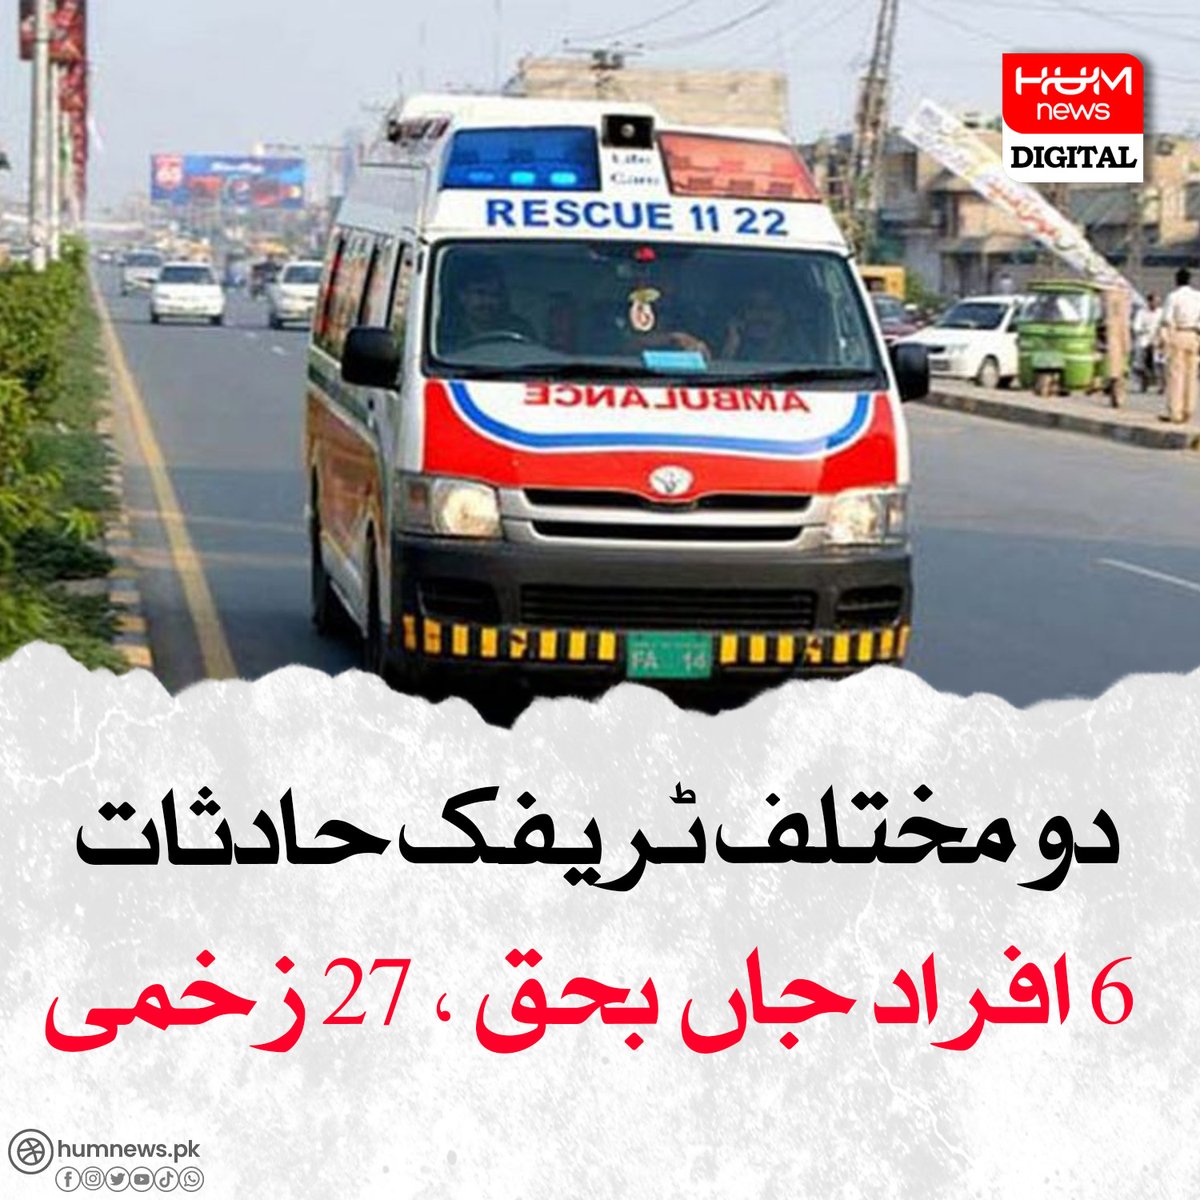 دو مختلف ٹریفک حادثات، 6 افراد جاں بحق ، 27 زخمی humnews.pk/latest/478766/